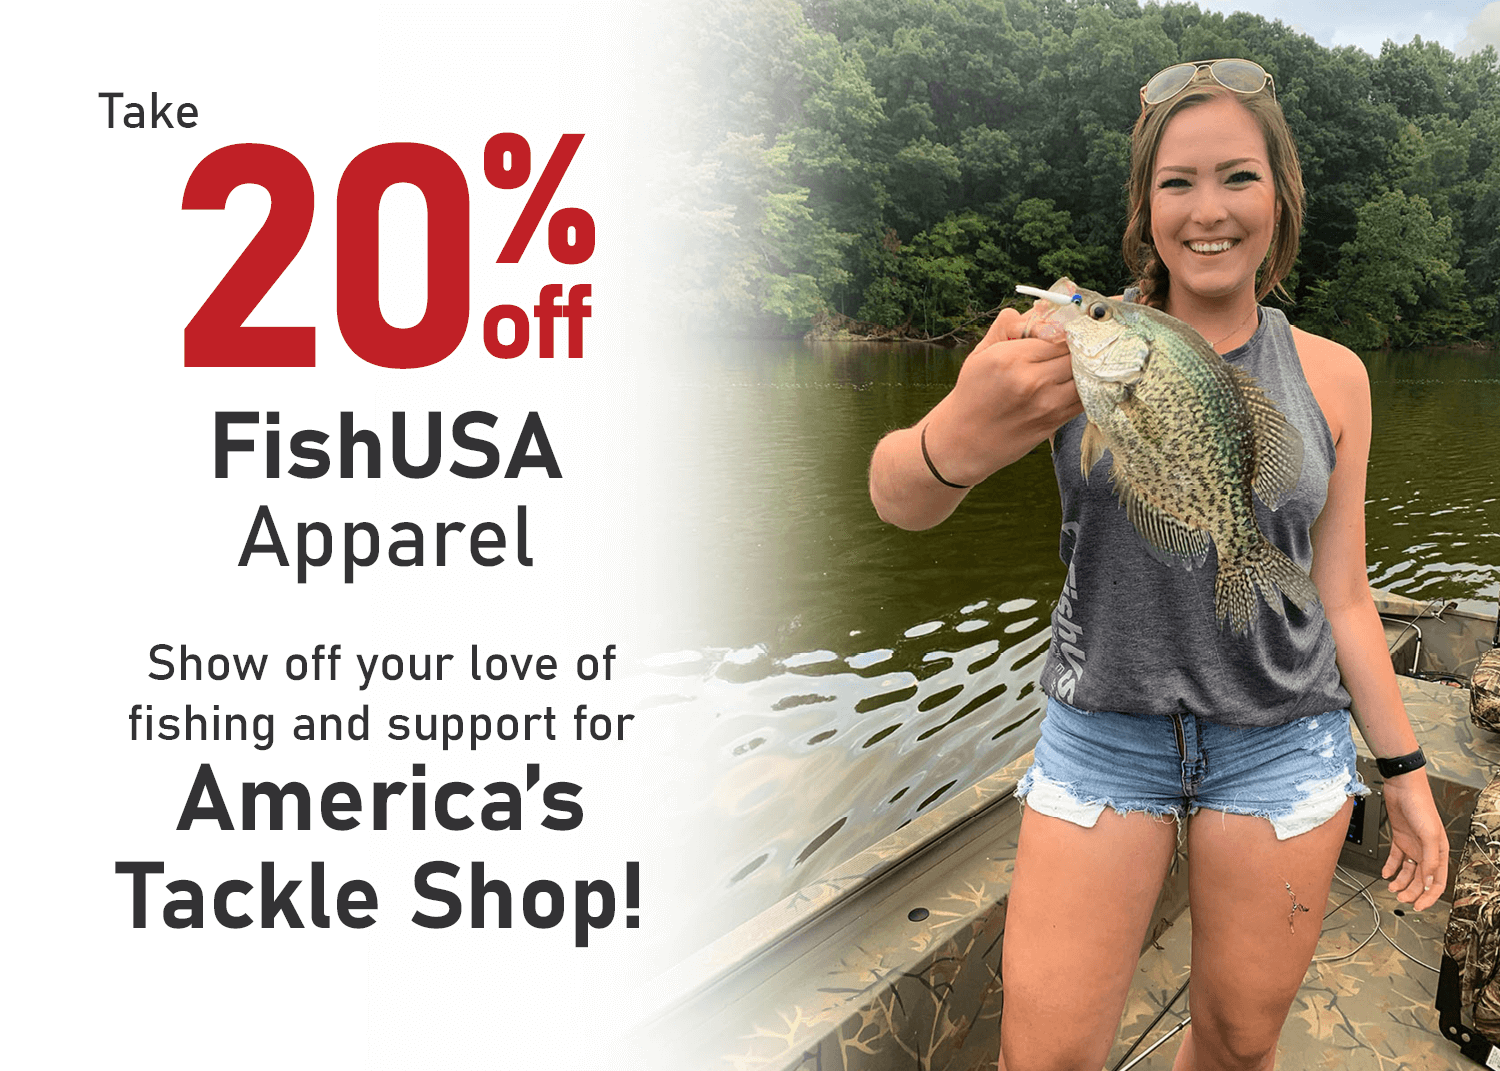 Save 20% on FishUSA Apparel